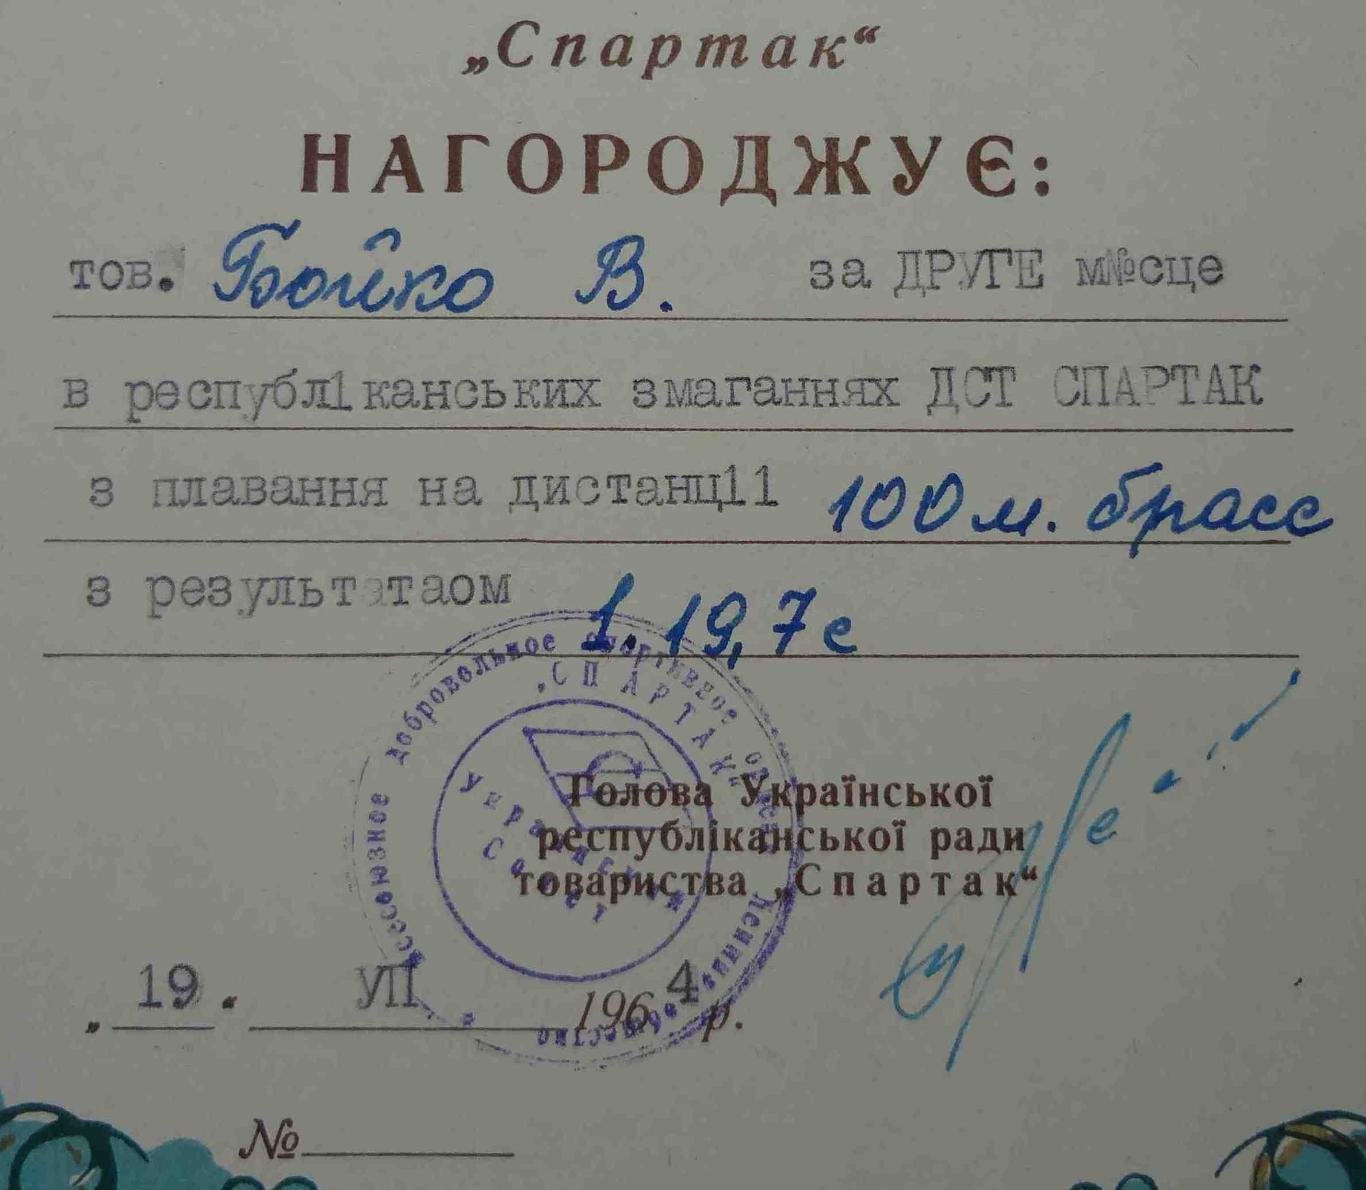 Диплом 2 степени Украинский республиканский совет ДСО Спартак 1964 плавание (11) 1